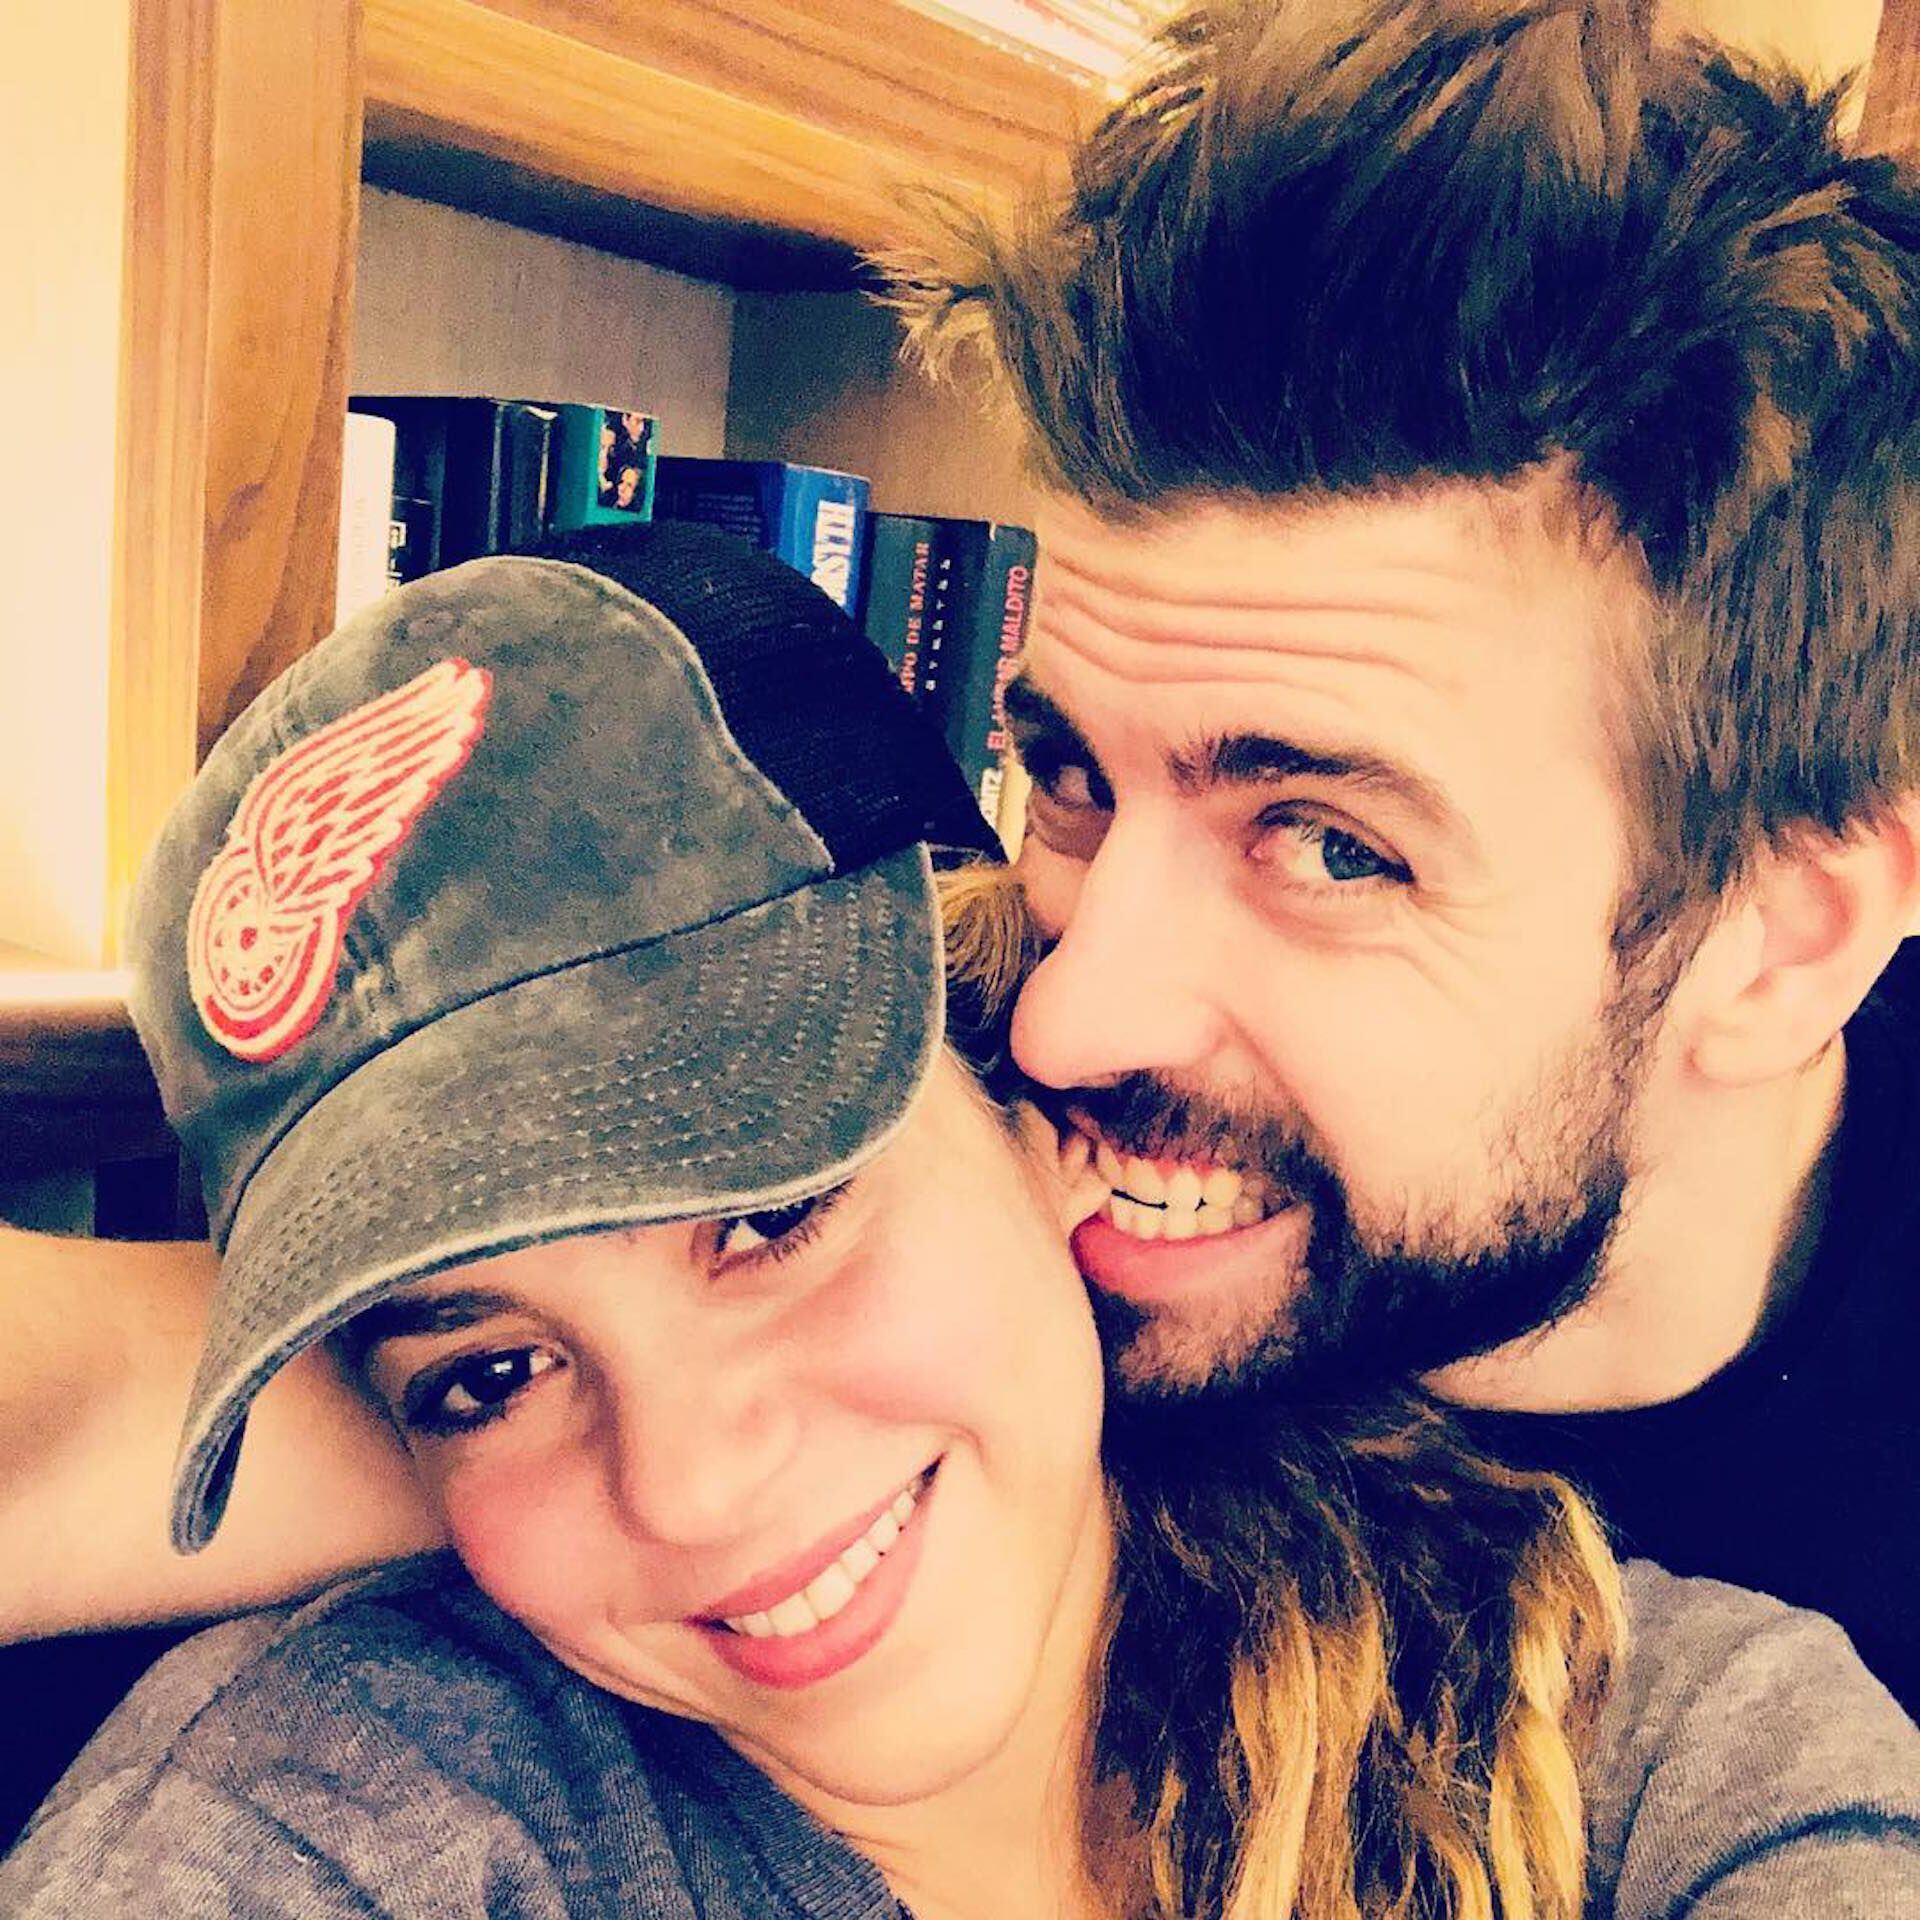 Shakira y Piqué disfrutando de su romance, pese a que ella es una mujer 10 años mayor que él.